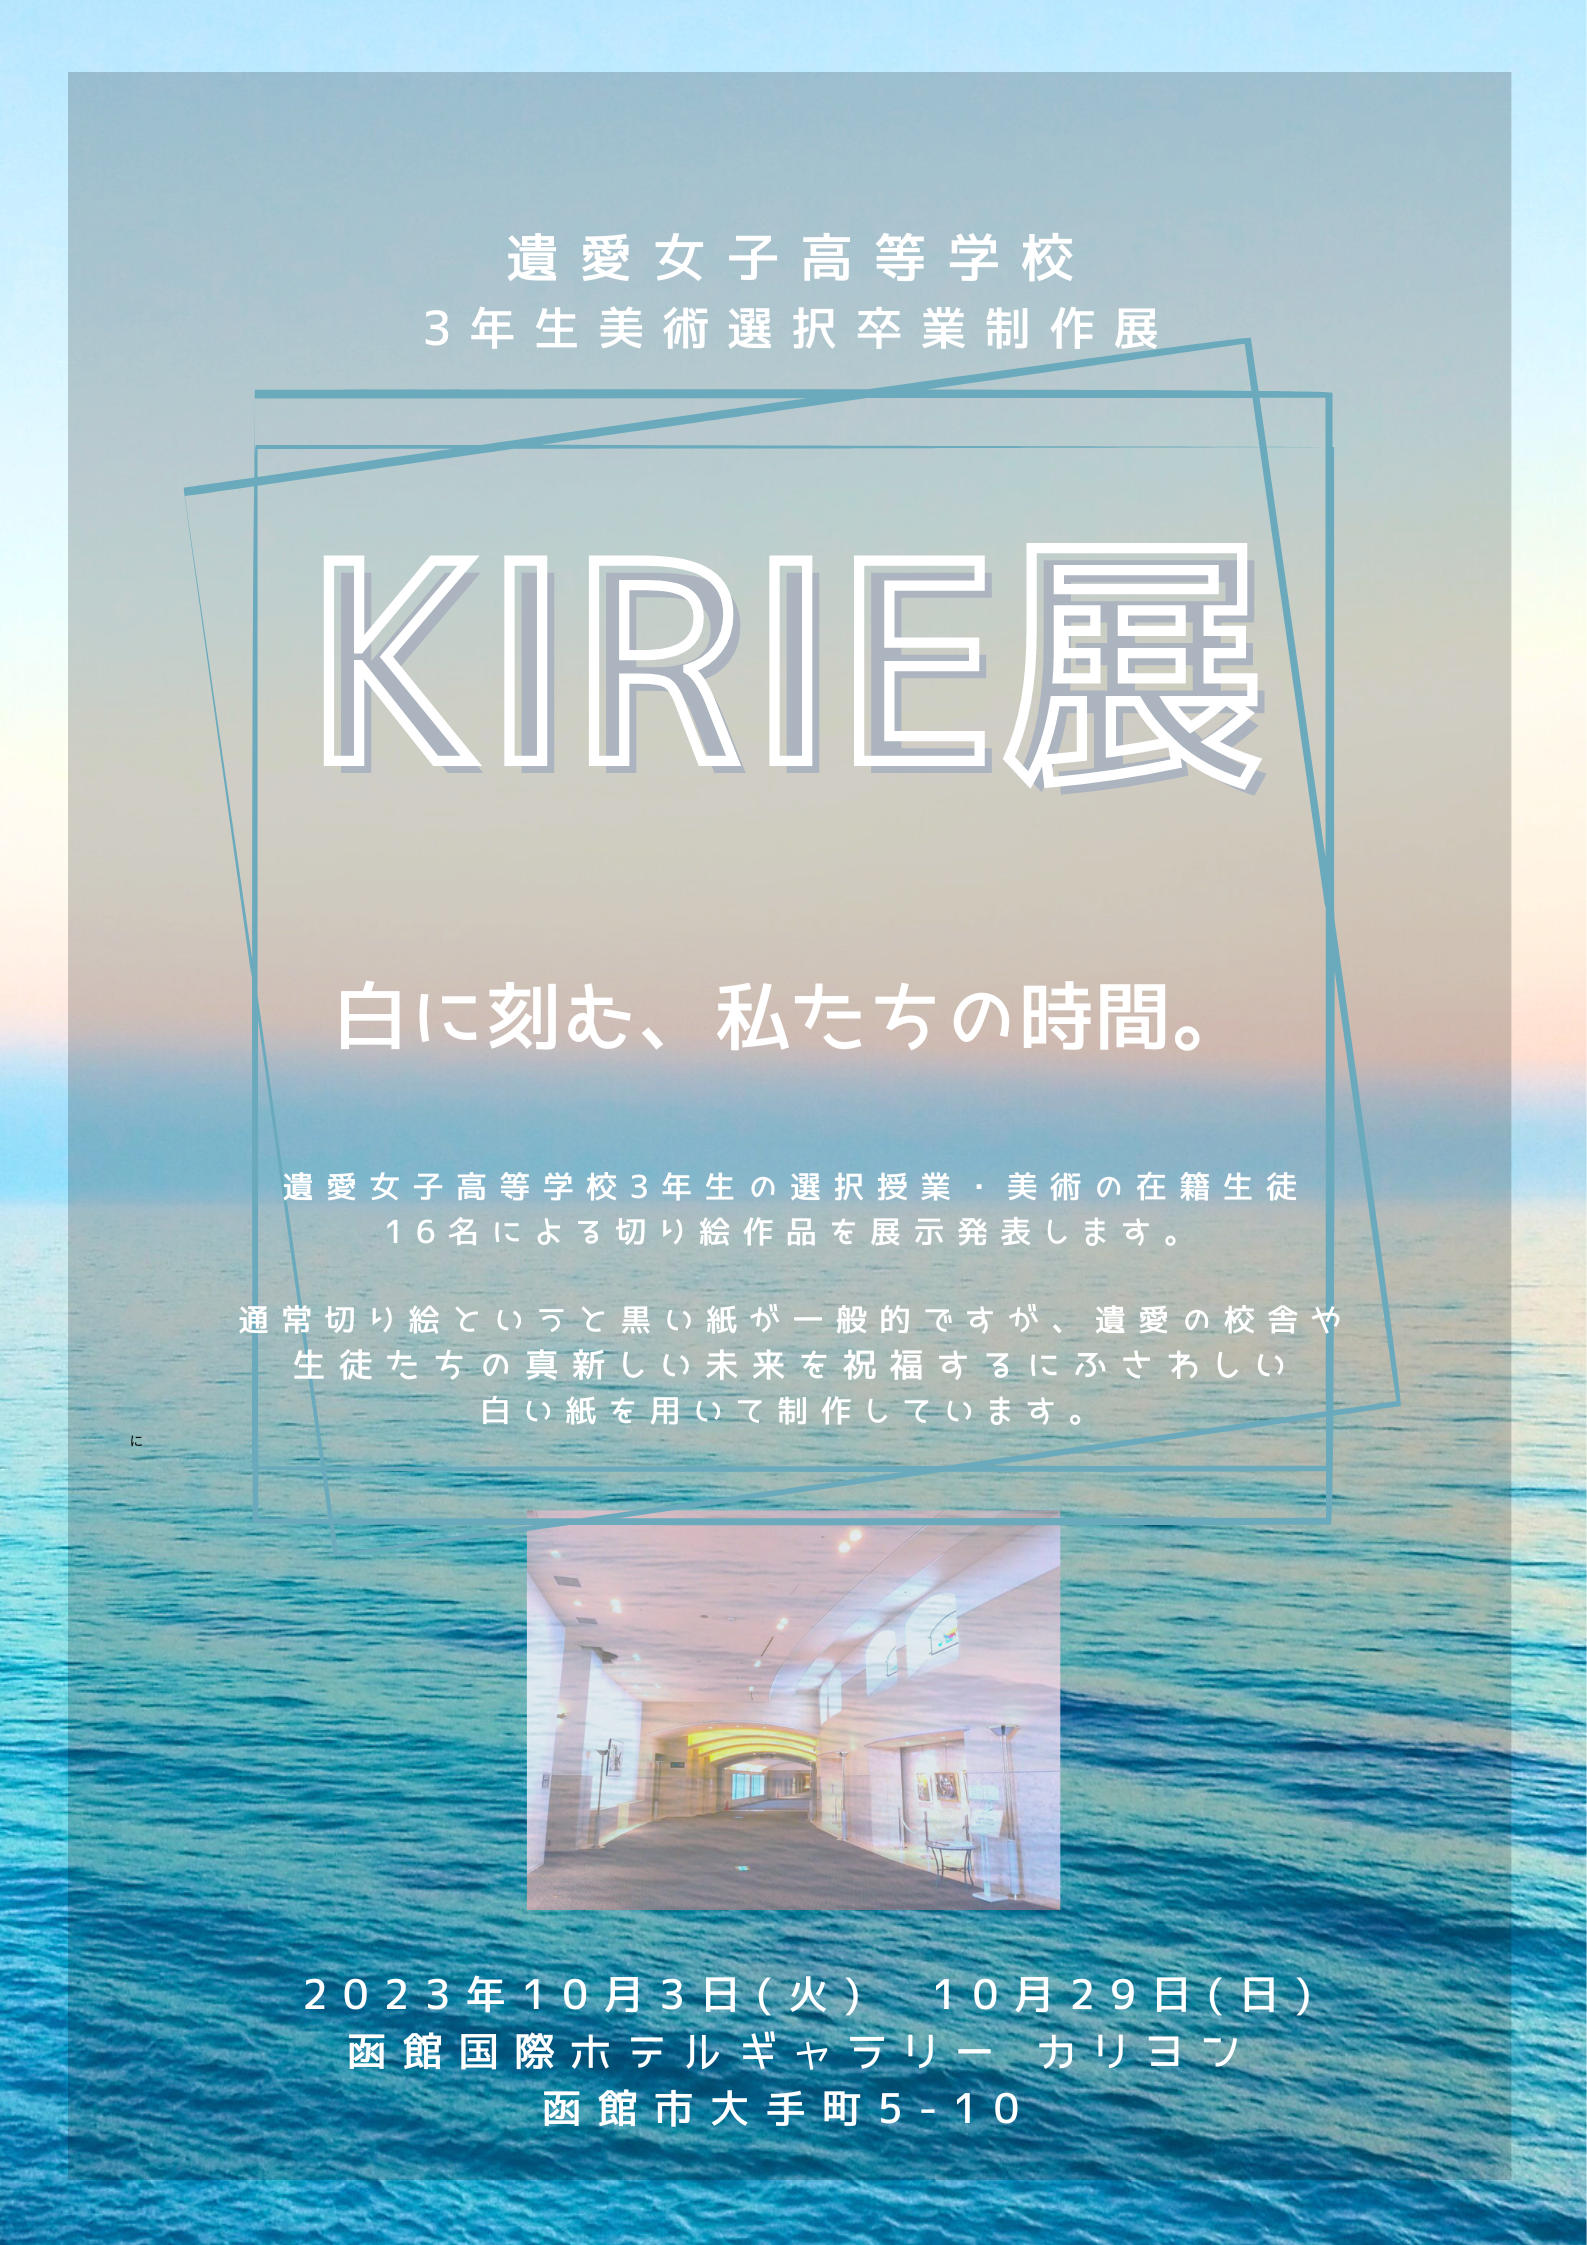 遺愛女子高等学校3年生による美術選択卒業制作展『KIRIE展』を国際ホテルにて開催いたします。